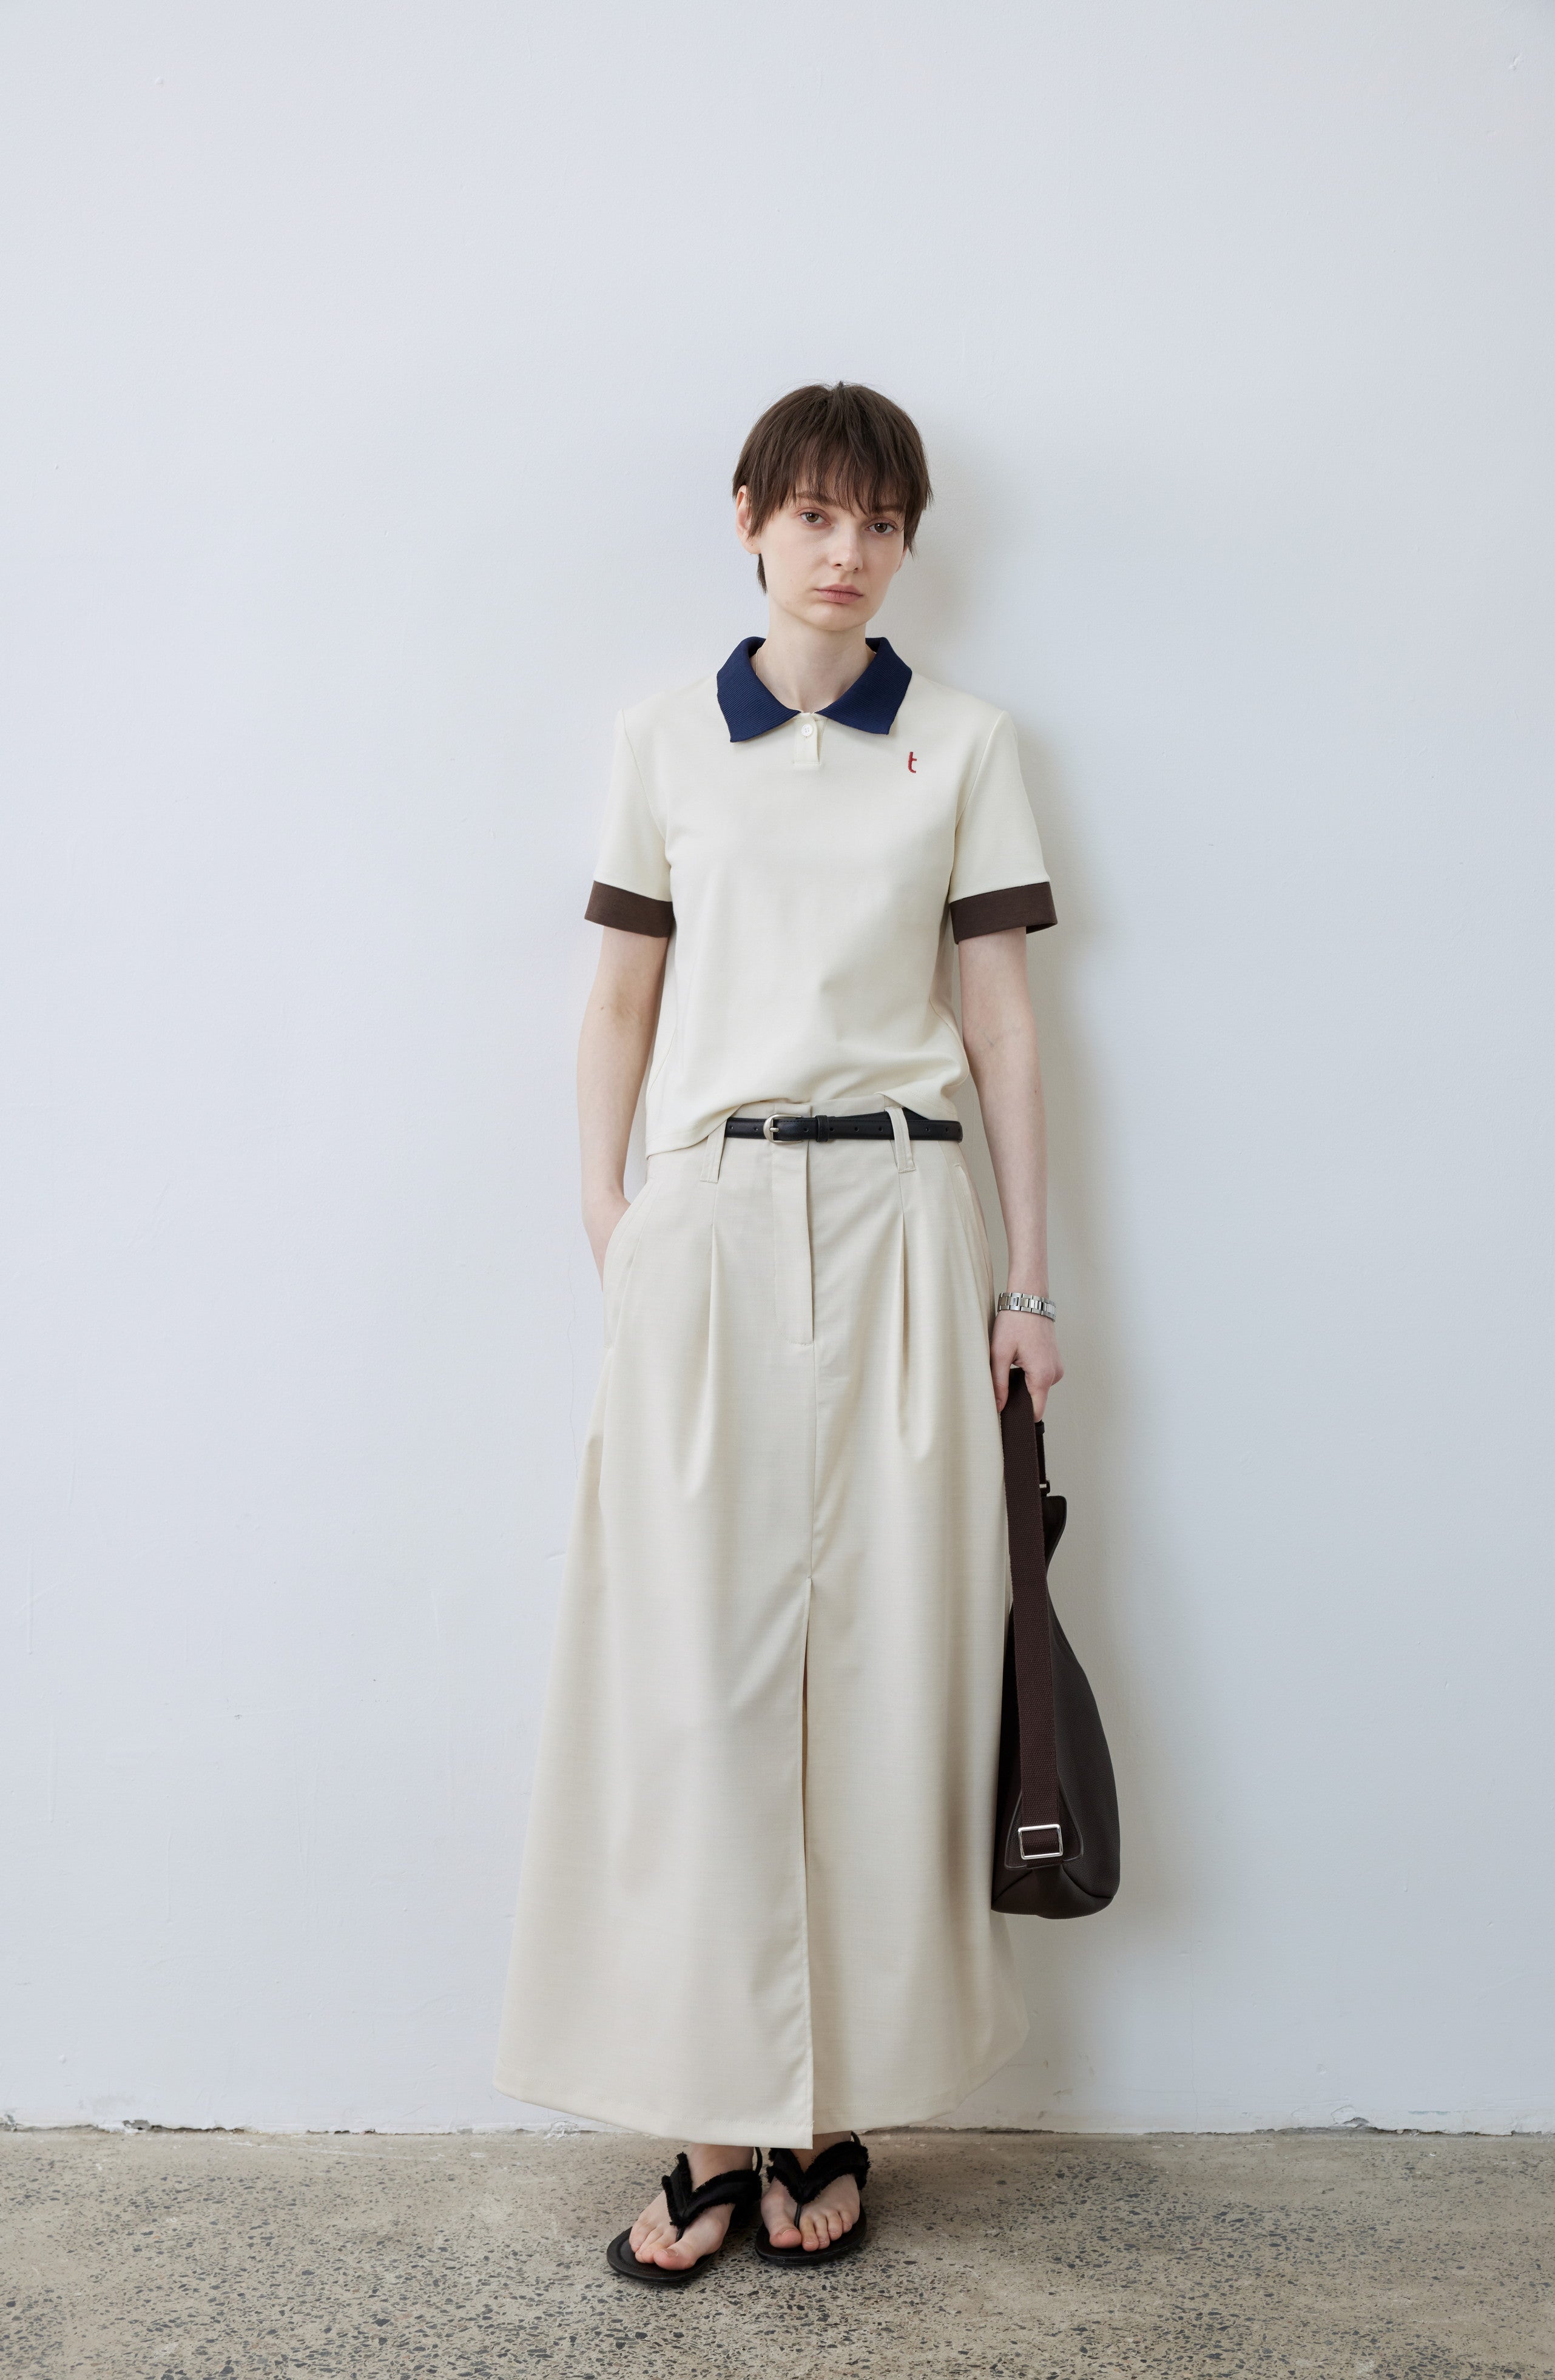 SLIT LINE SUIT SKIRT / スリットラインスーツスカート